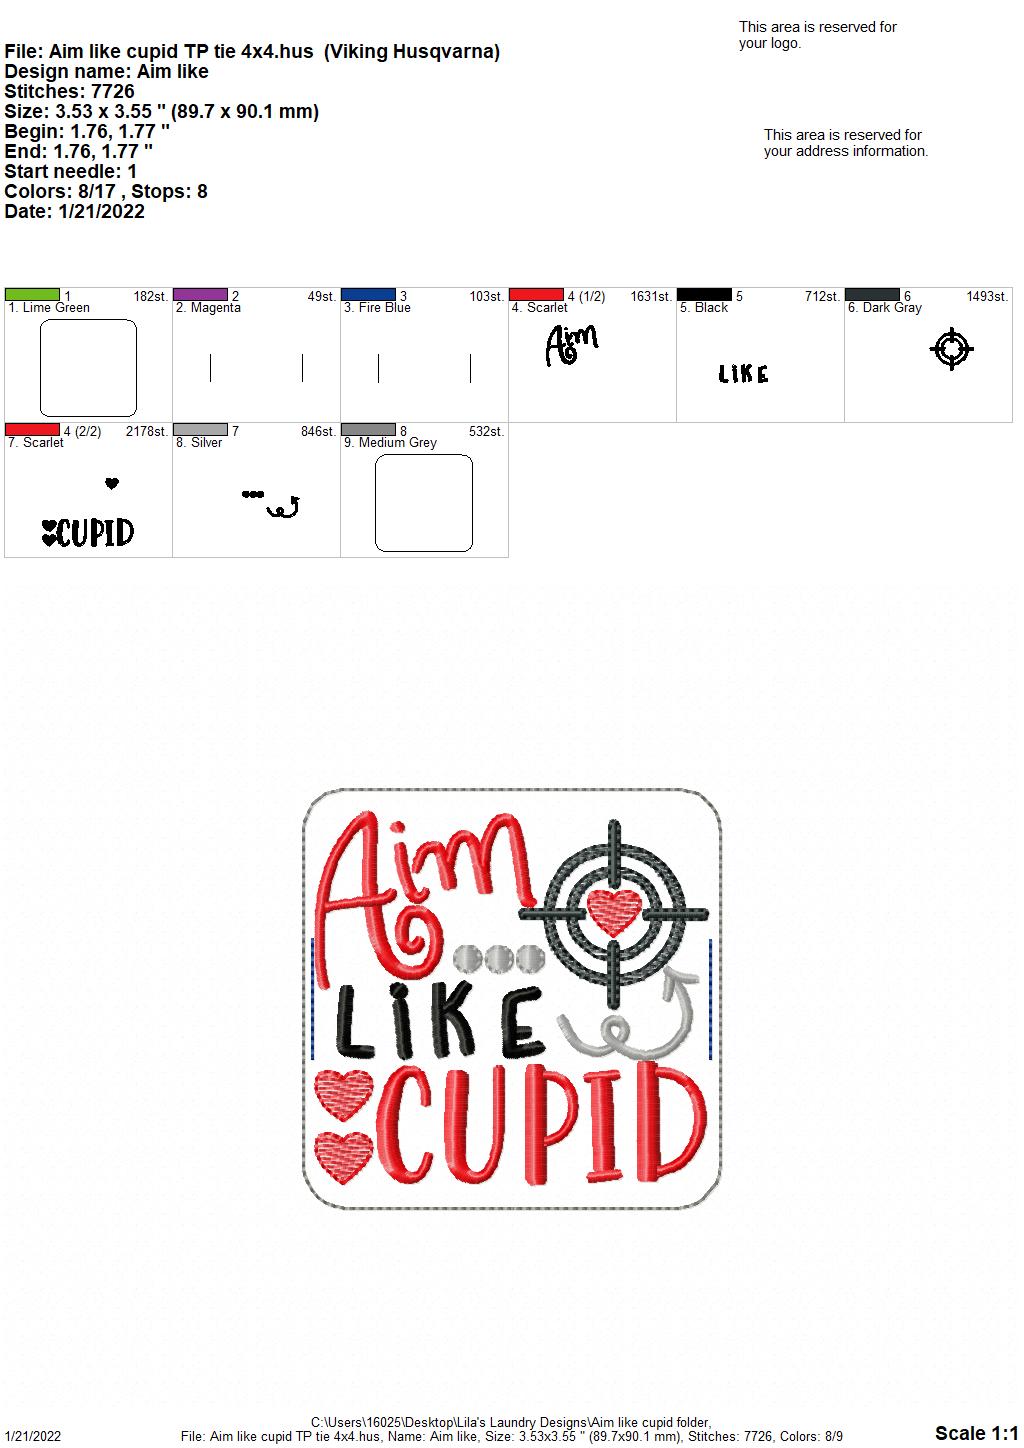 Aim Like Cupid - TP tie 4x4 - DIGITAL Embroidery DESIGN